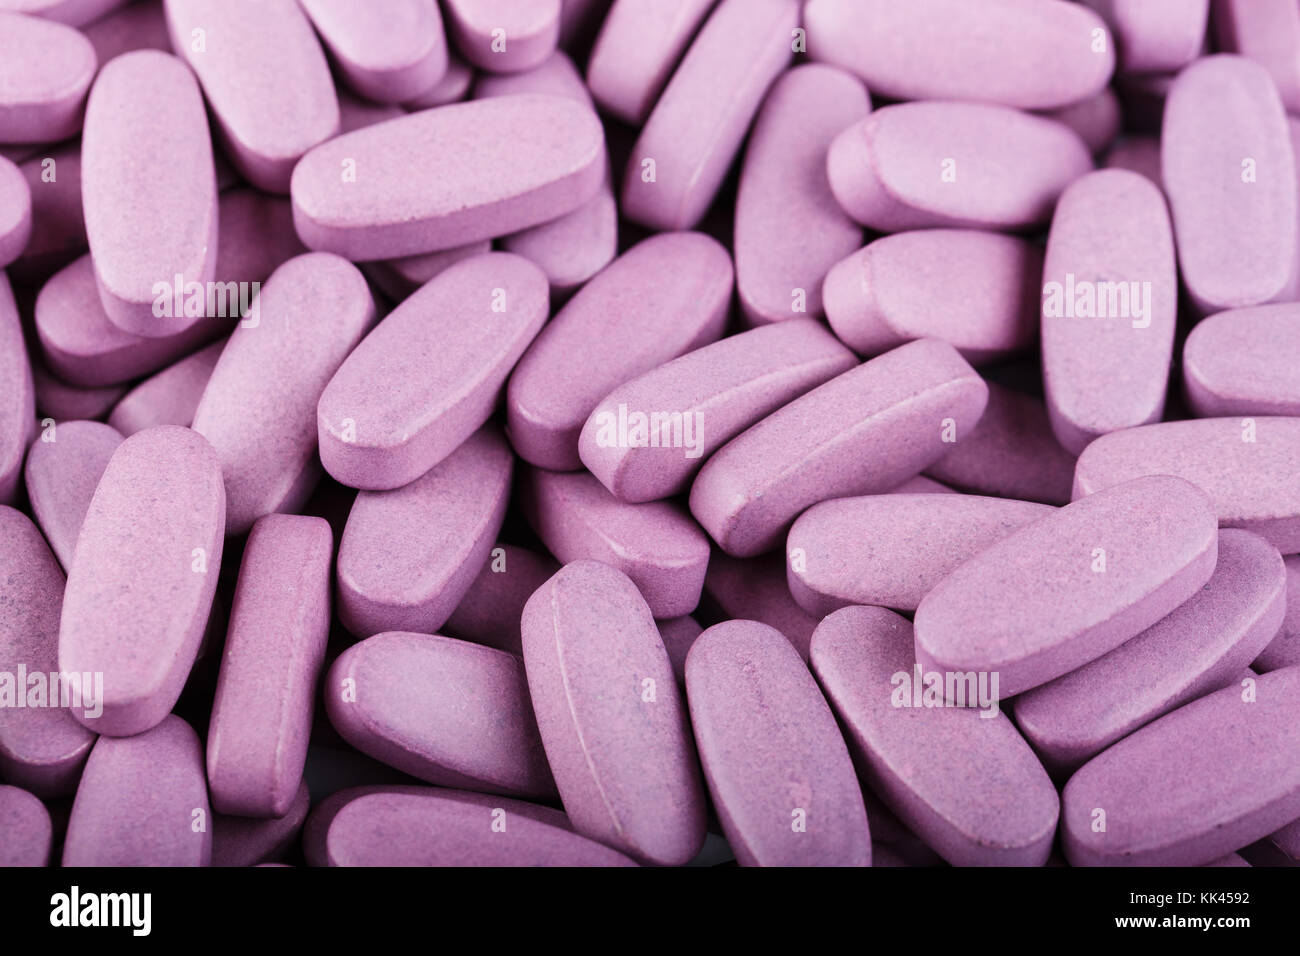 Viele große rosa Tabletten sind als Hintergrund verstreut Stockfotografie -  Alamy